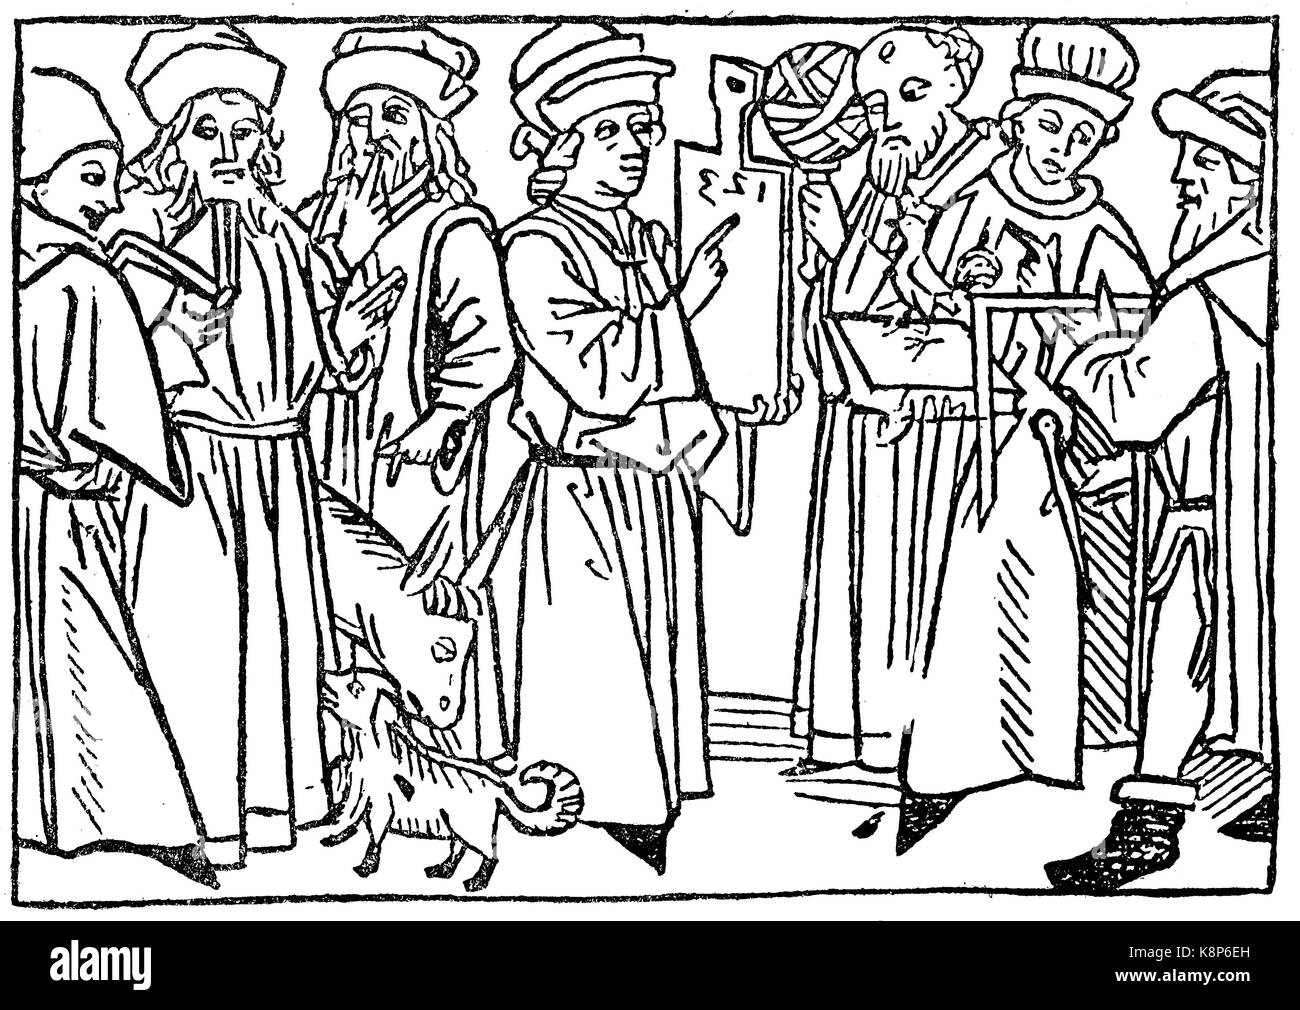 Le sette corporazioni libero, Symbolbild für die freien sieben Zünfte, 1479, digital Riproduzione migliorata di una xilografia, pubblicata nel XIX secolo Foto Stock